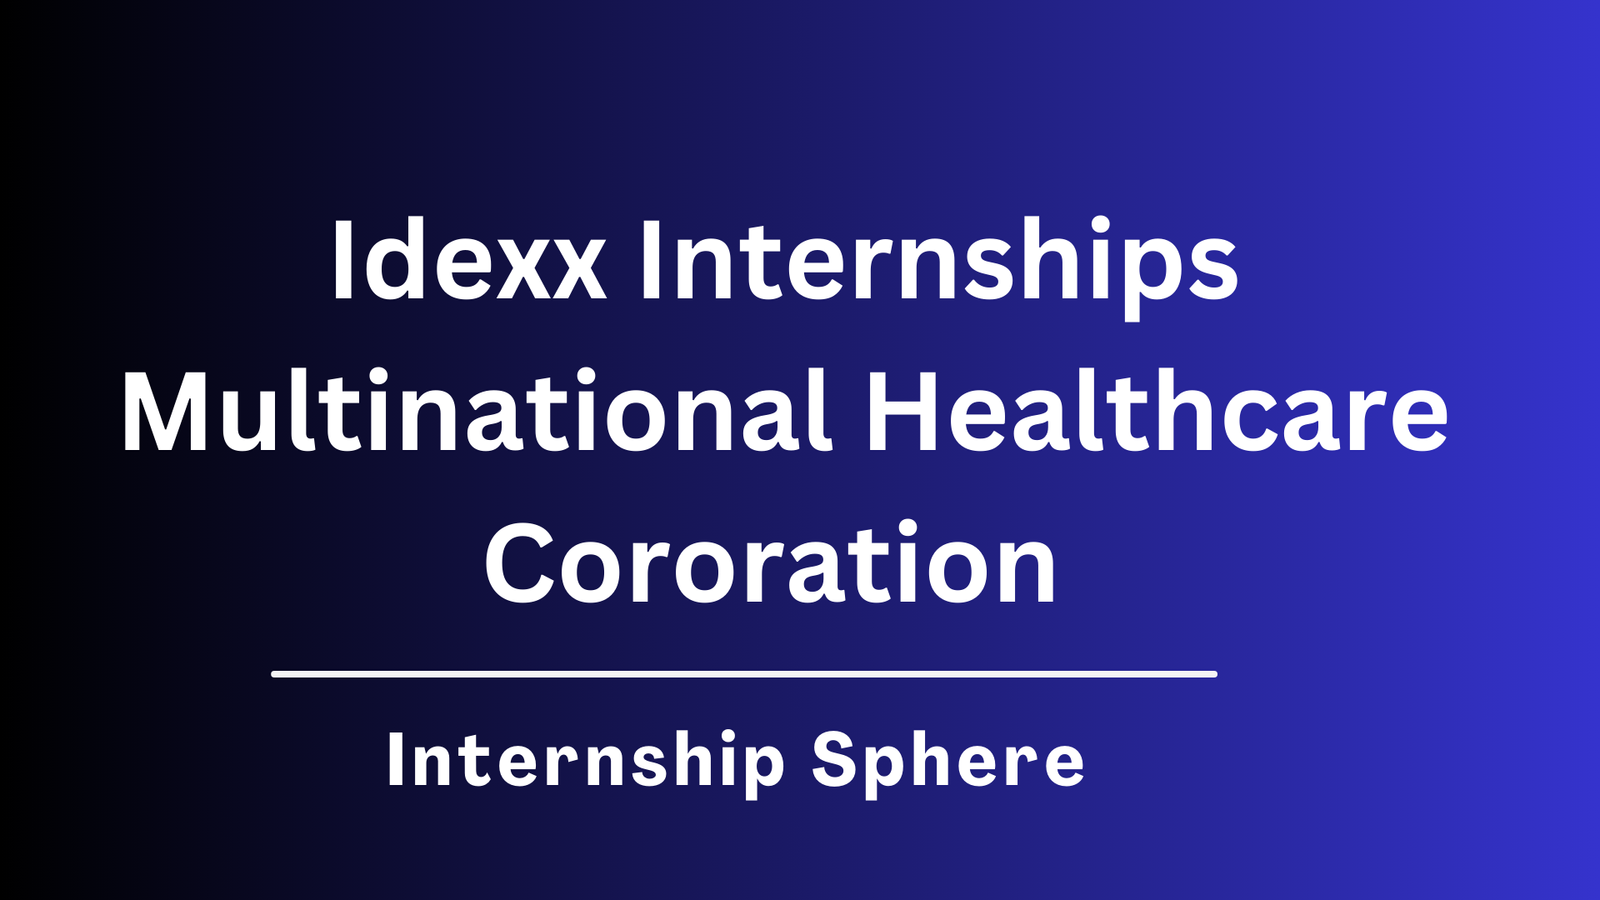 Idexx Internships